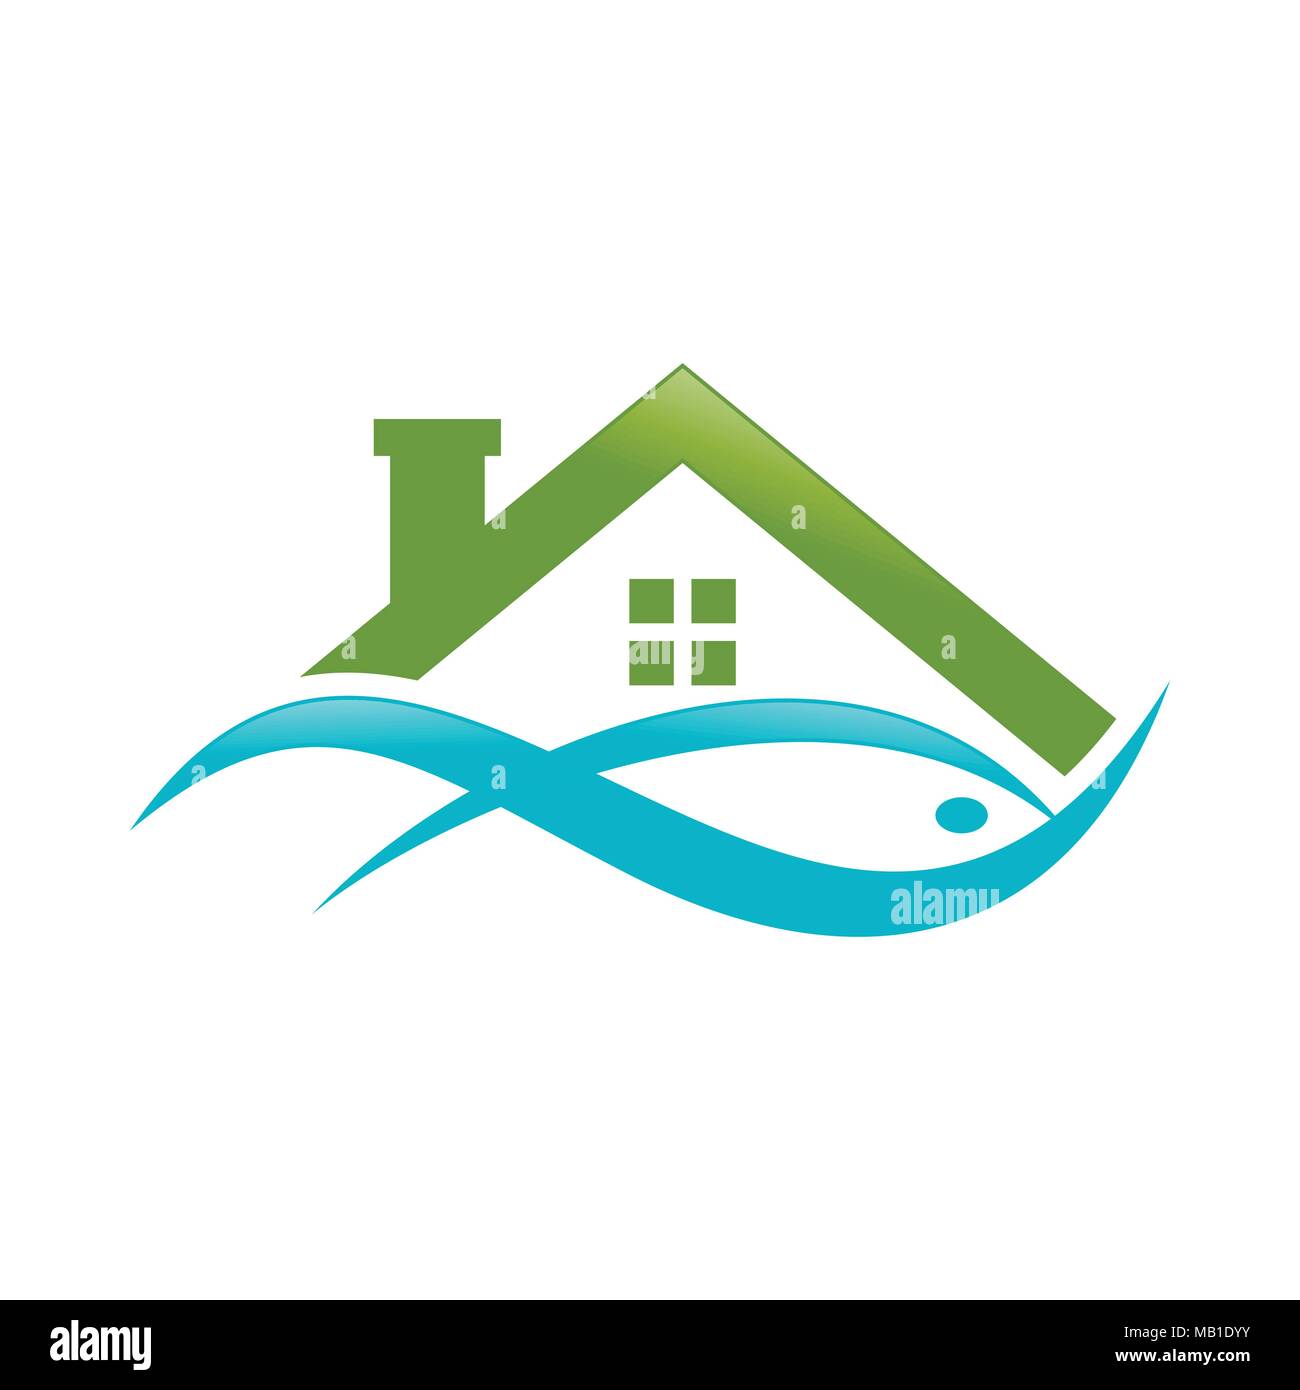 Abstract Lake House acquosa verde pesce simbolo del Logo Vector Graphic Design Illustrazione Vettoriale